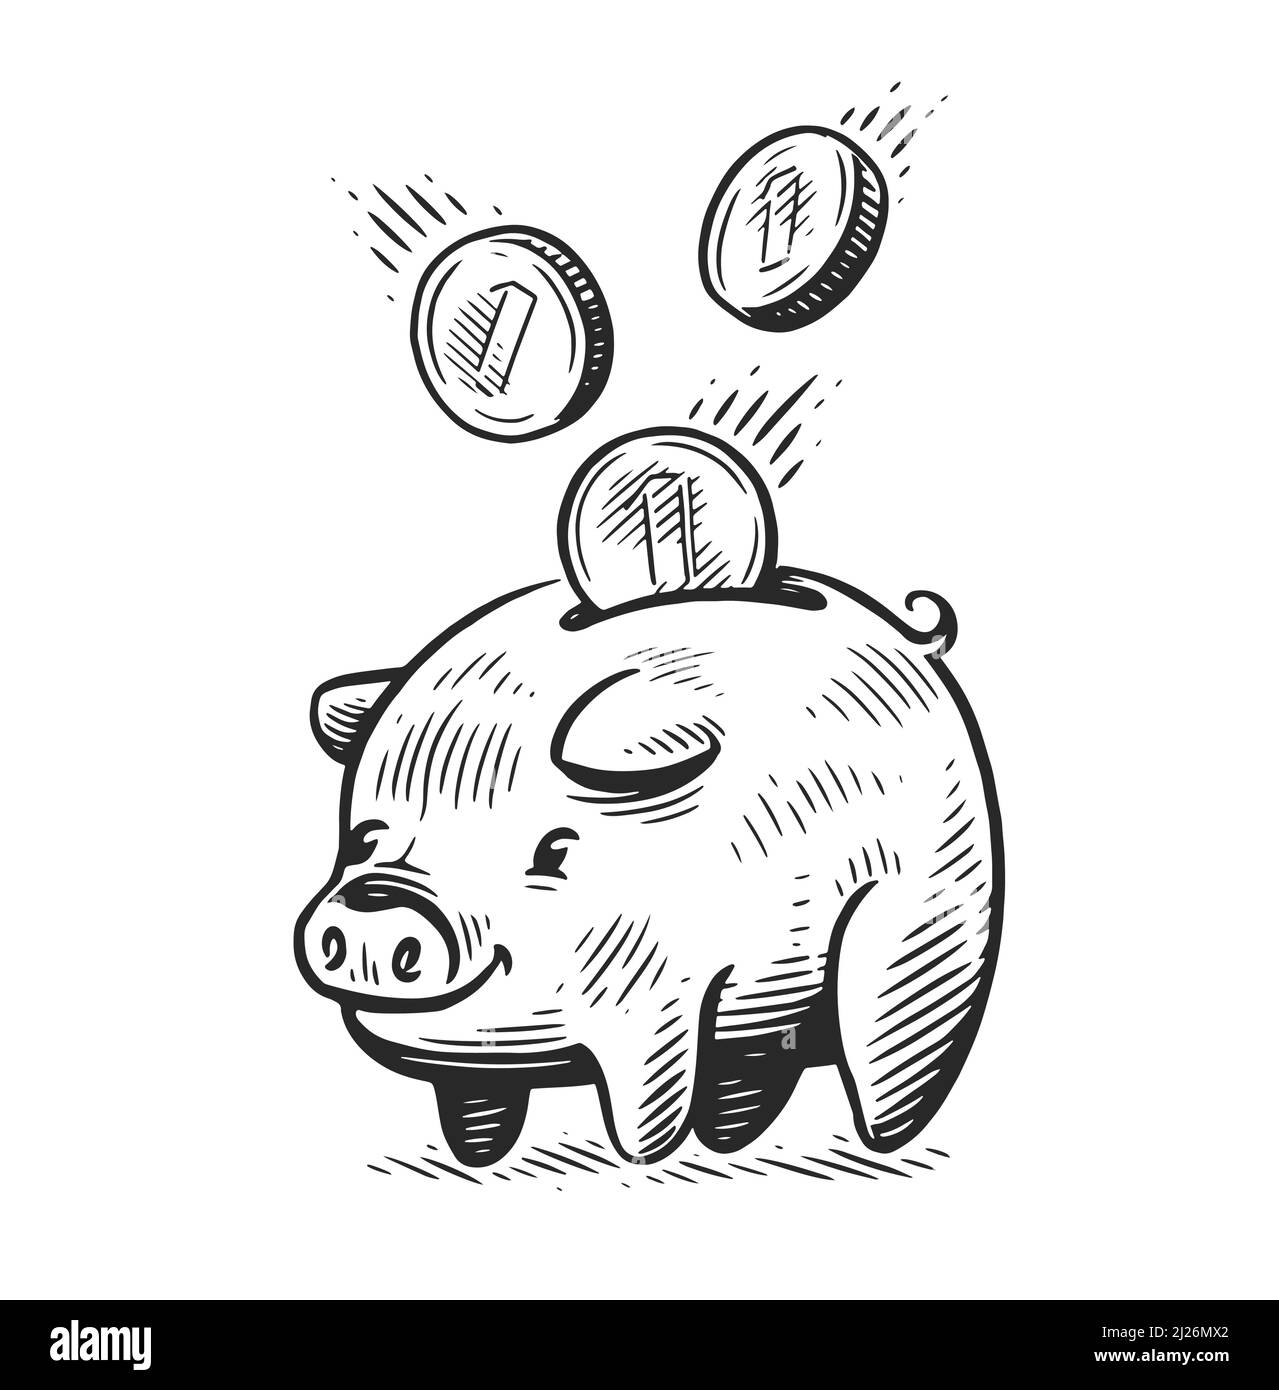 Sparschwein mit fallenden Münzen. Geschäfts-, Ertrags- Konzept. Skizzenvektordarstellung Stock Vektor